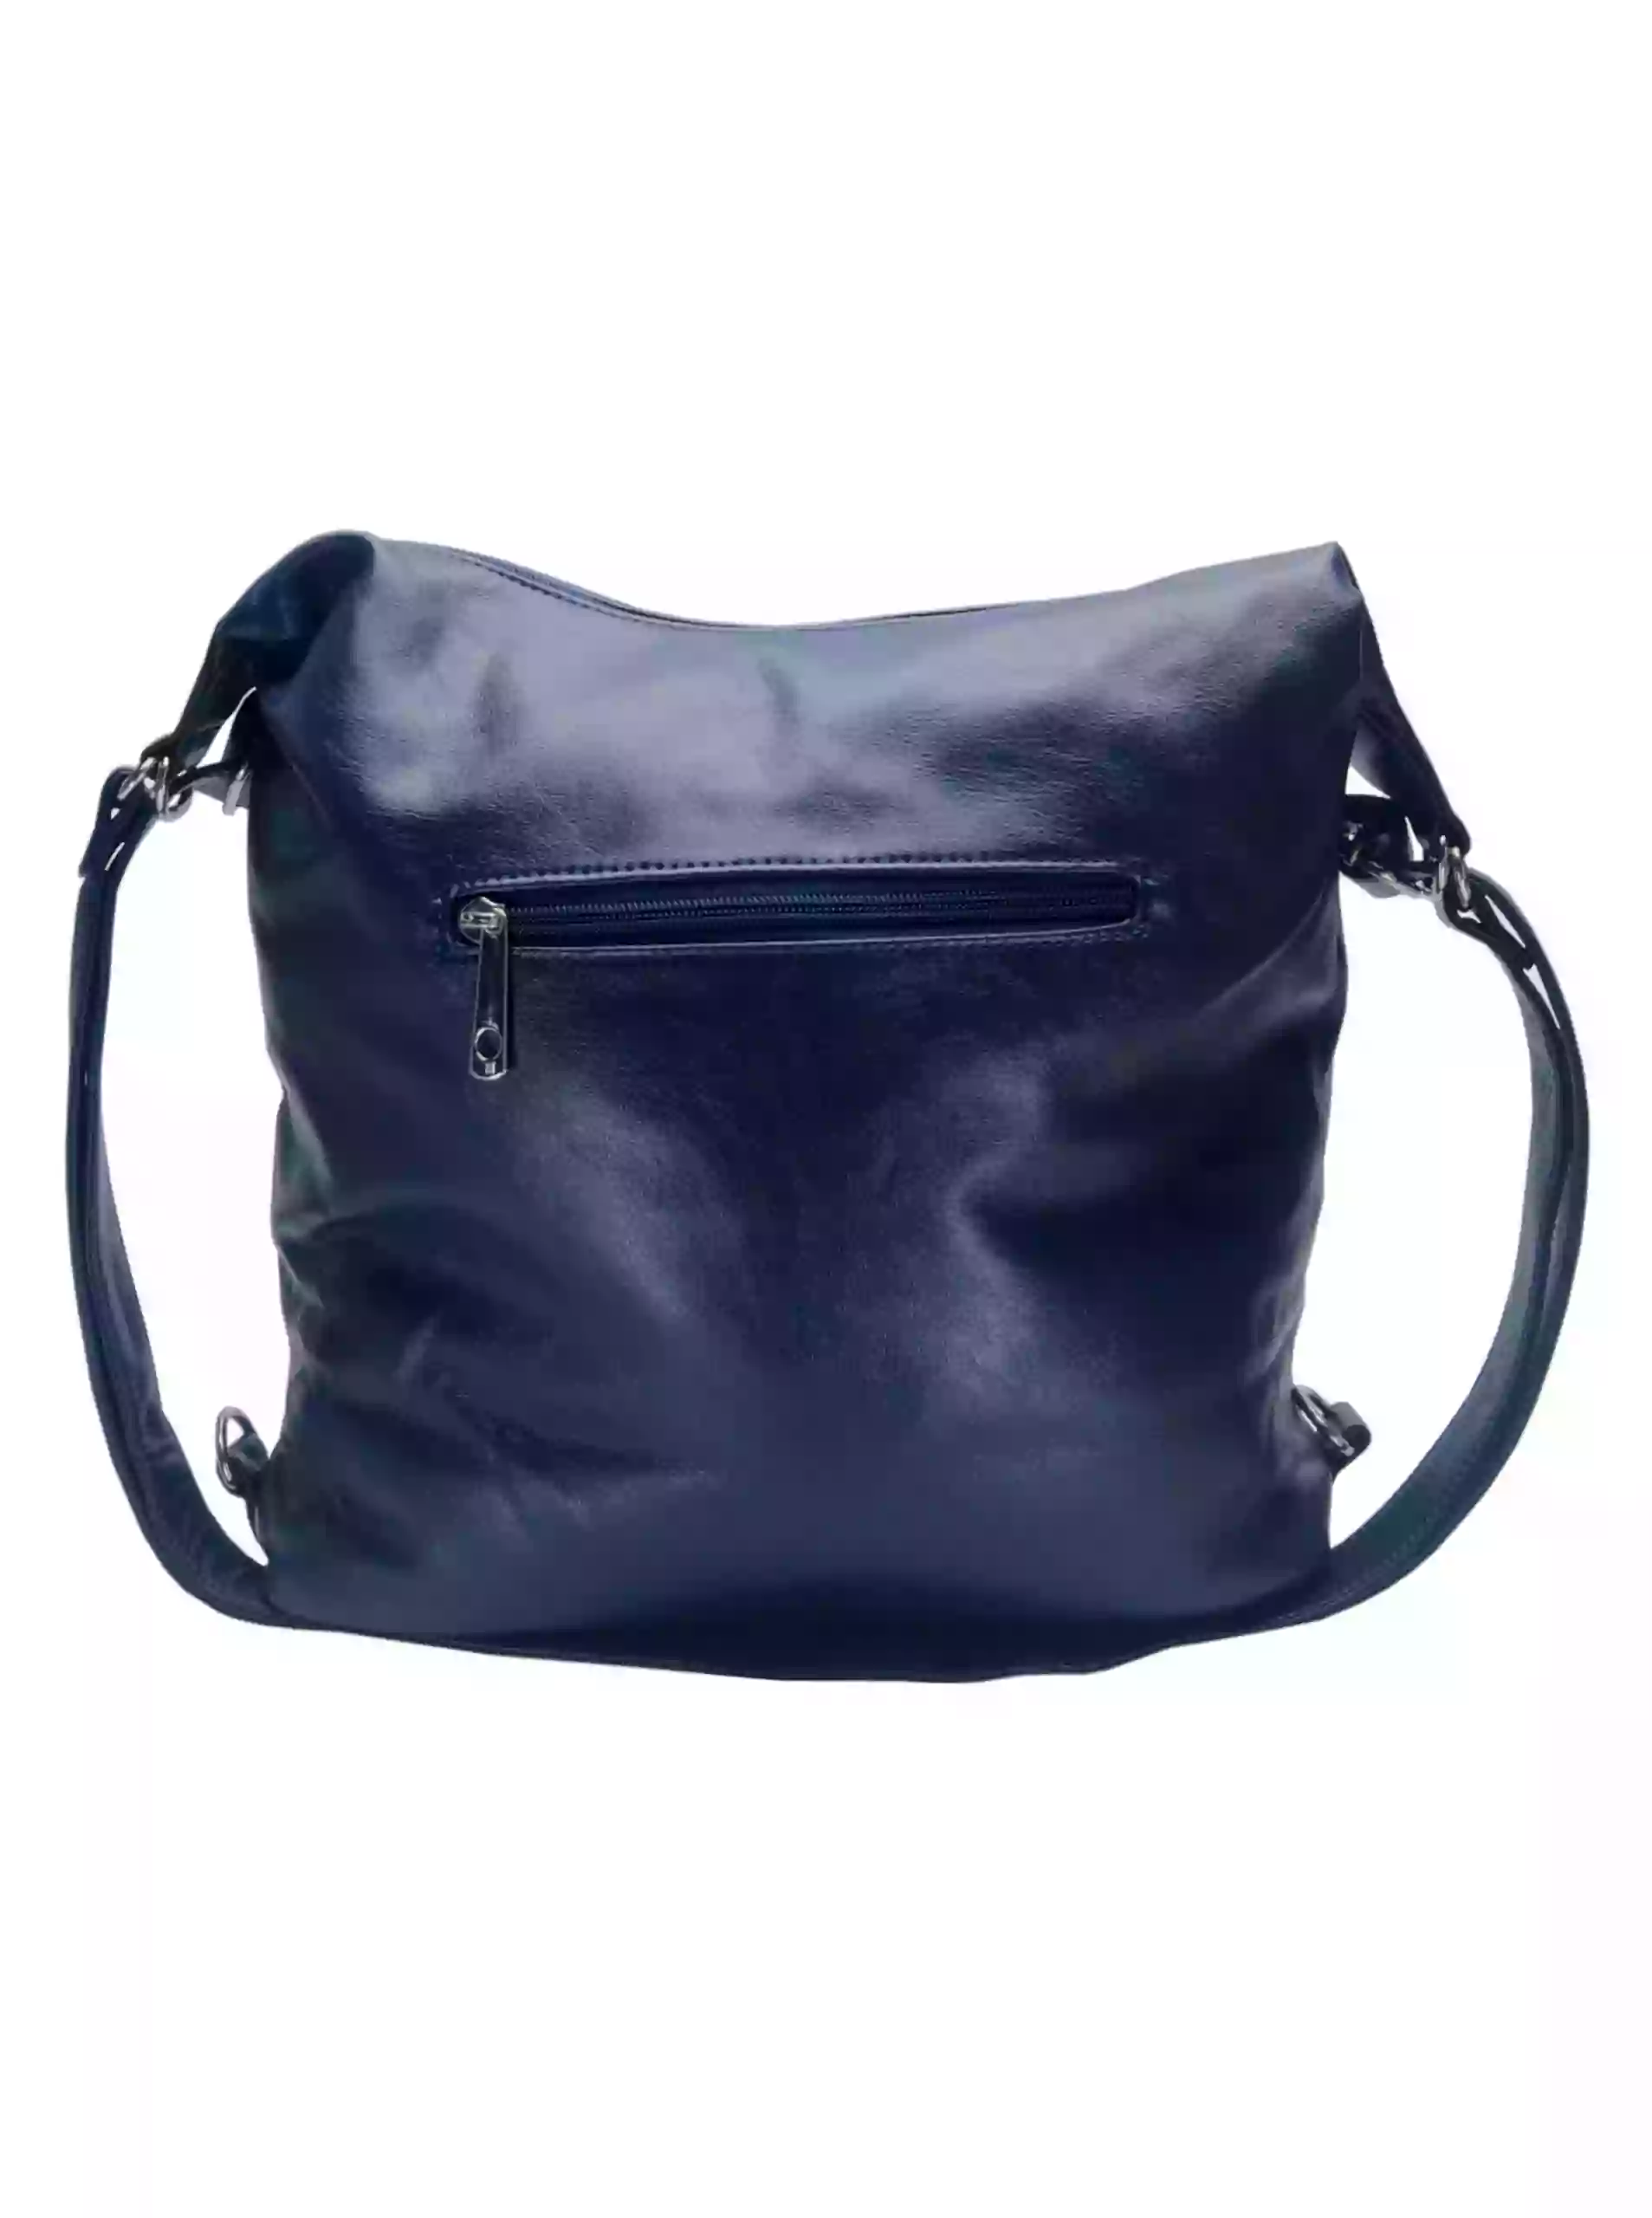 Velký tmavě modrý kabelko-batoh 2v1 s šikmými kapsami, Tapple, H18076O, zadní strana kabelko-batohu